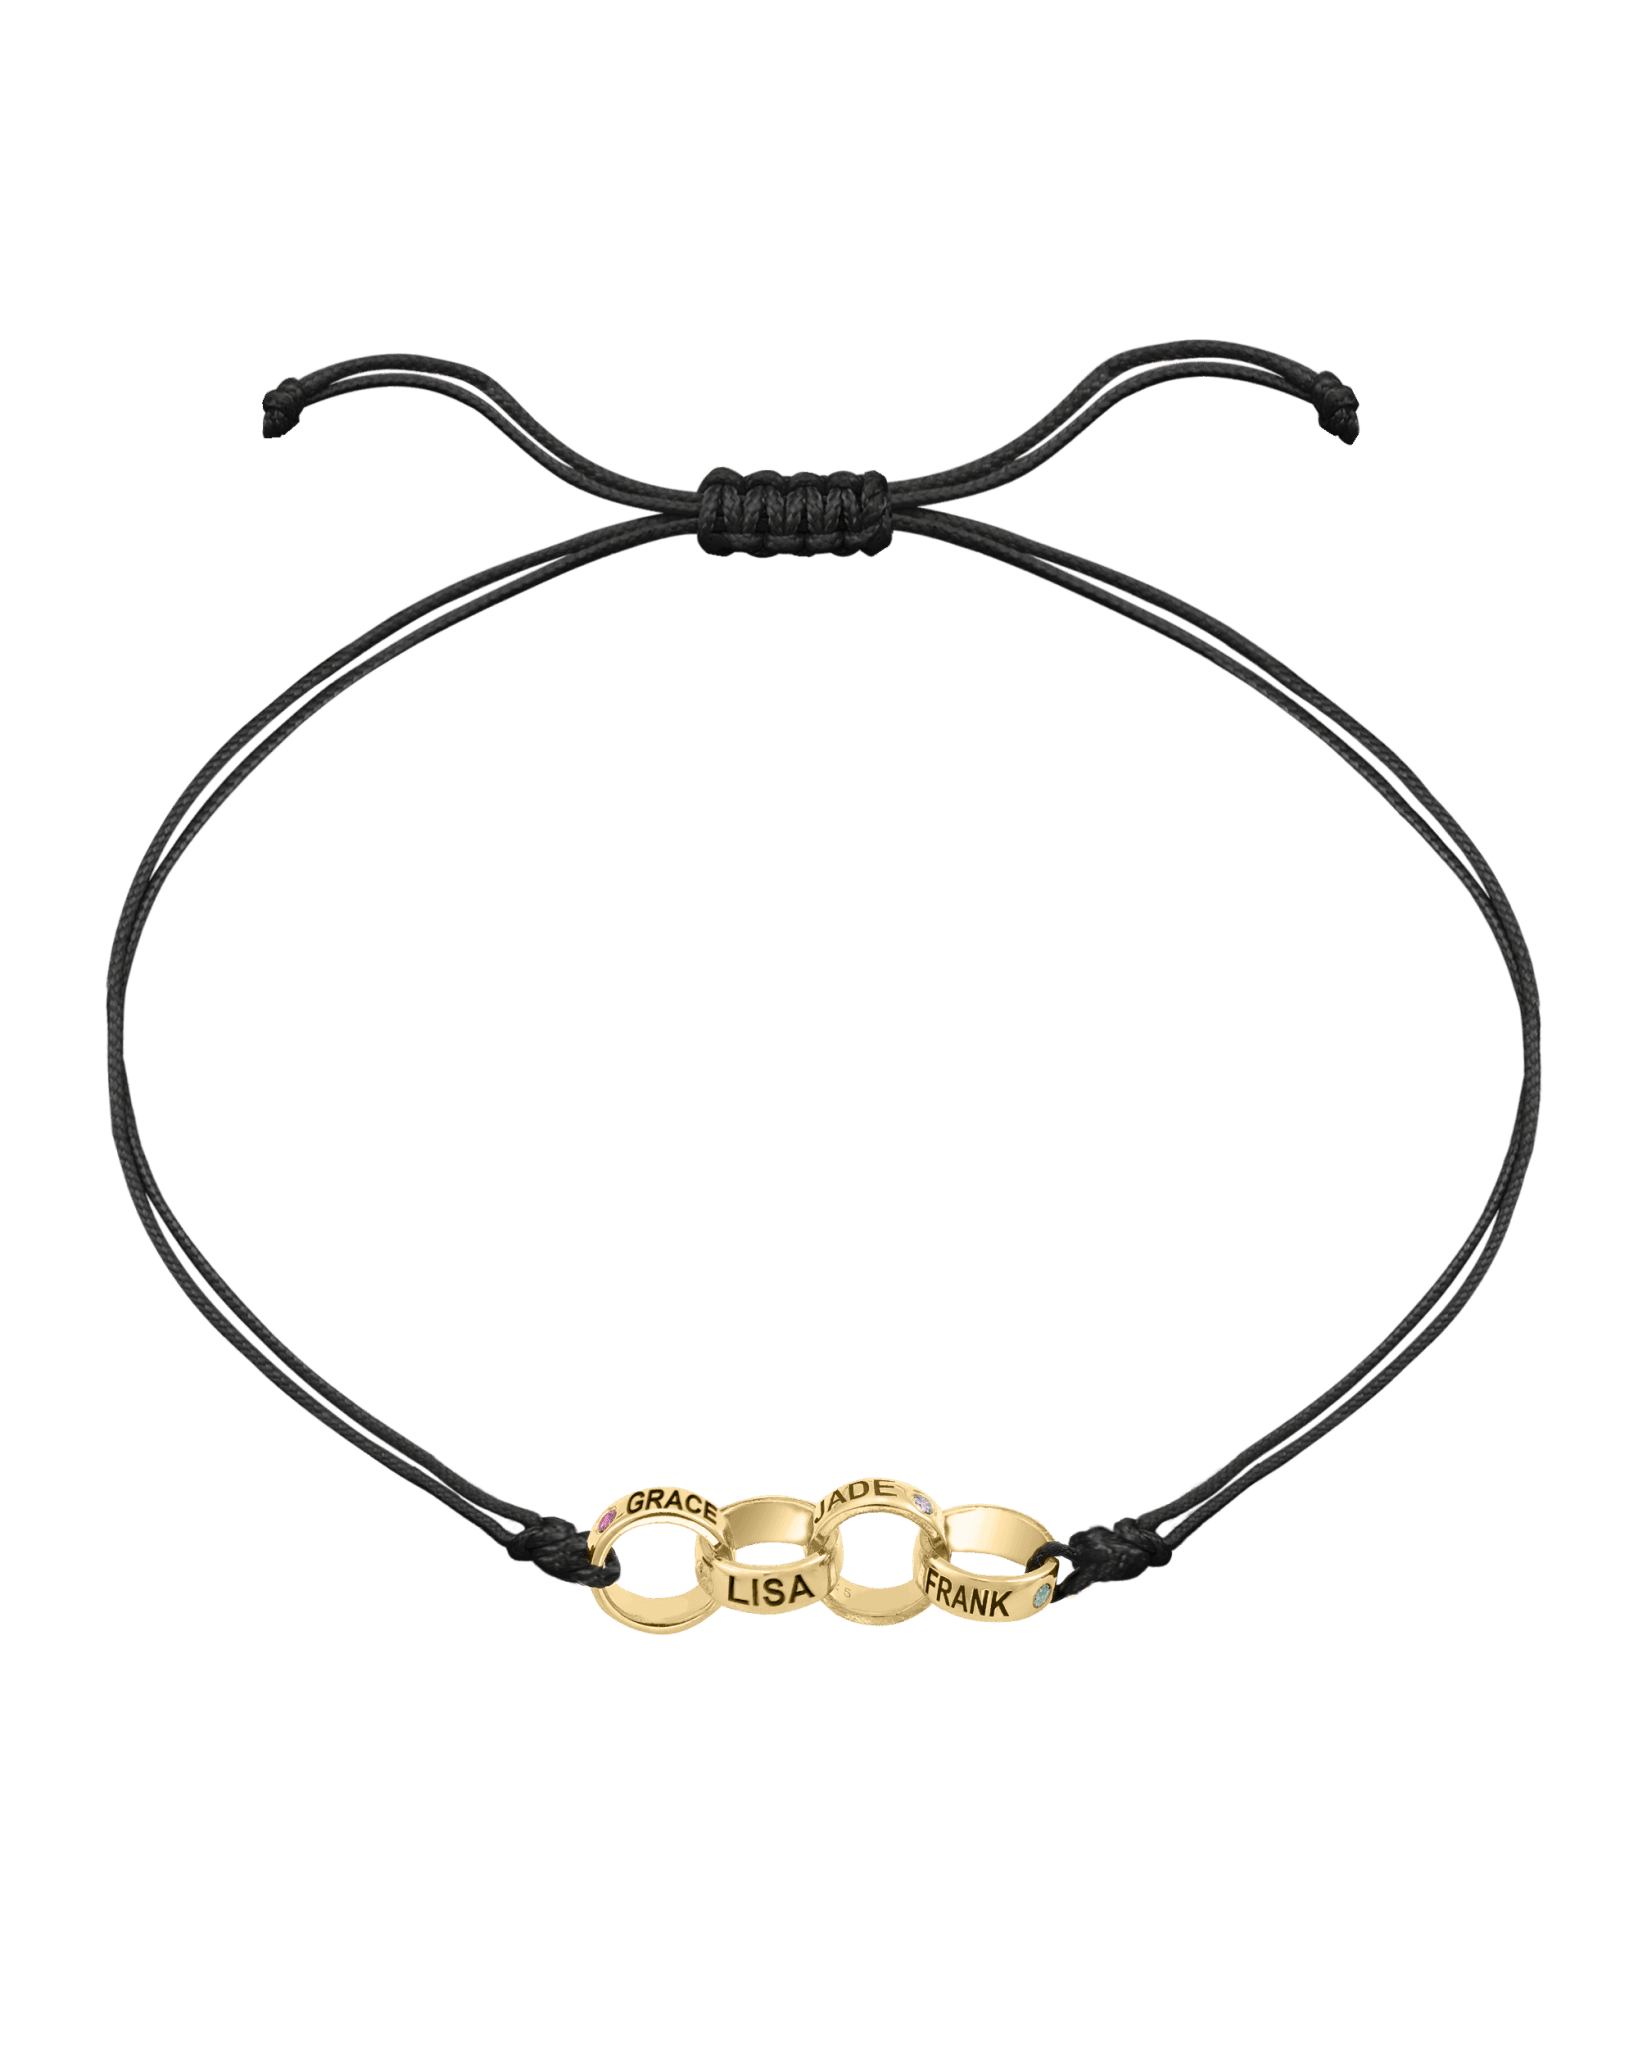 Engravable Links of Love - 18K Gold Vermeil Bracelets magal-dev 